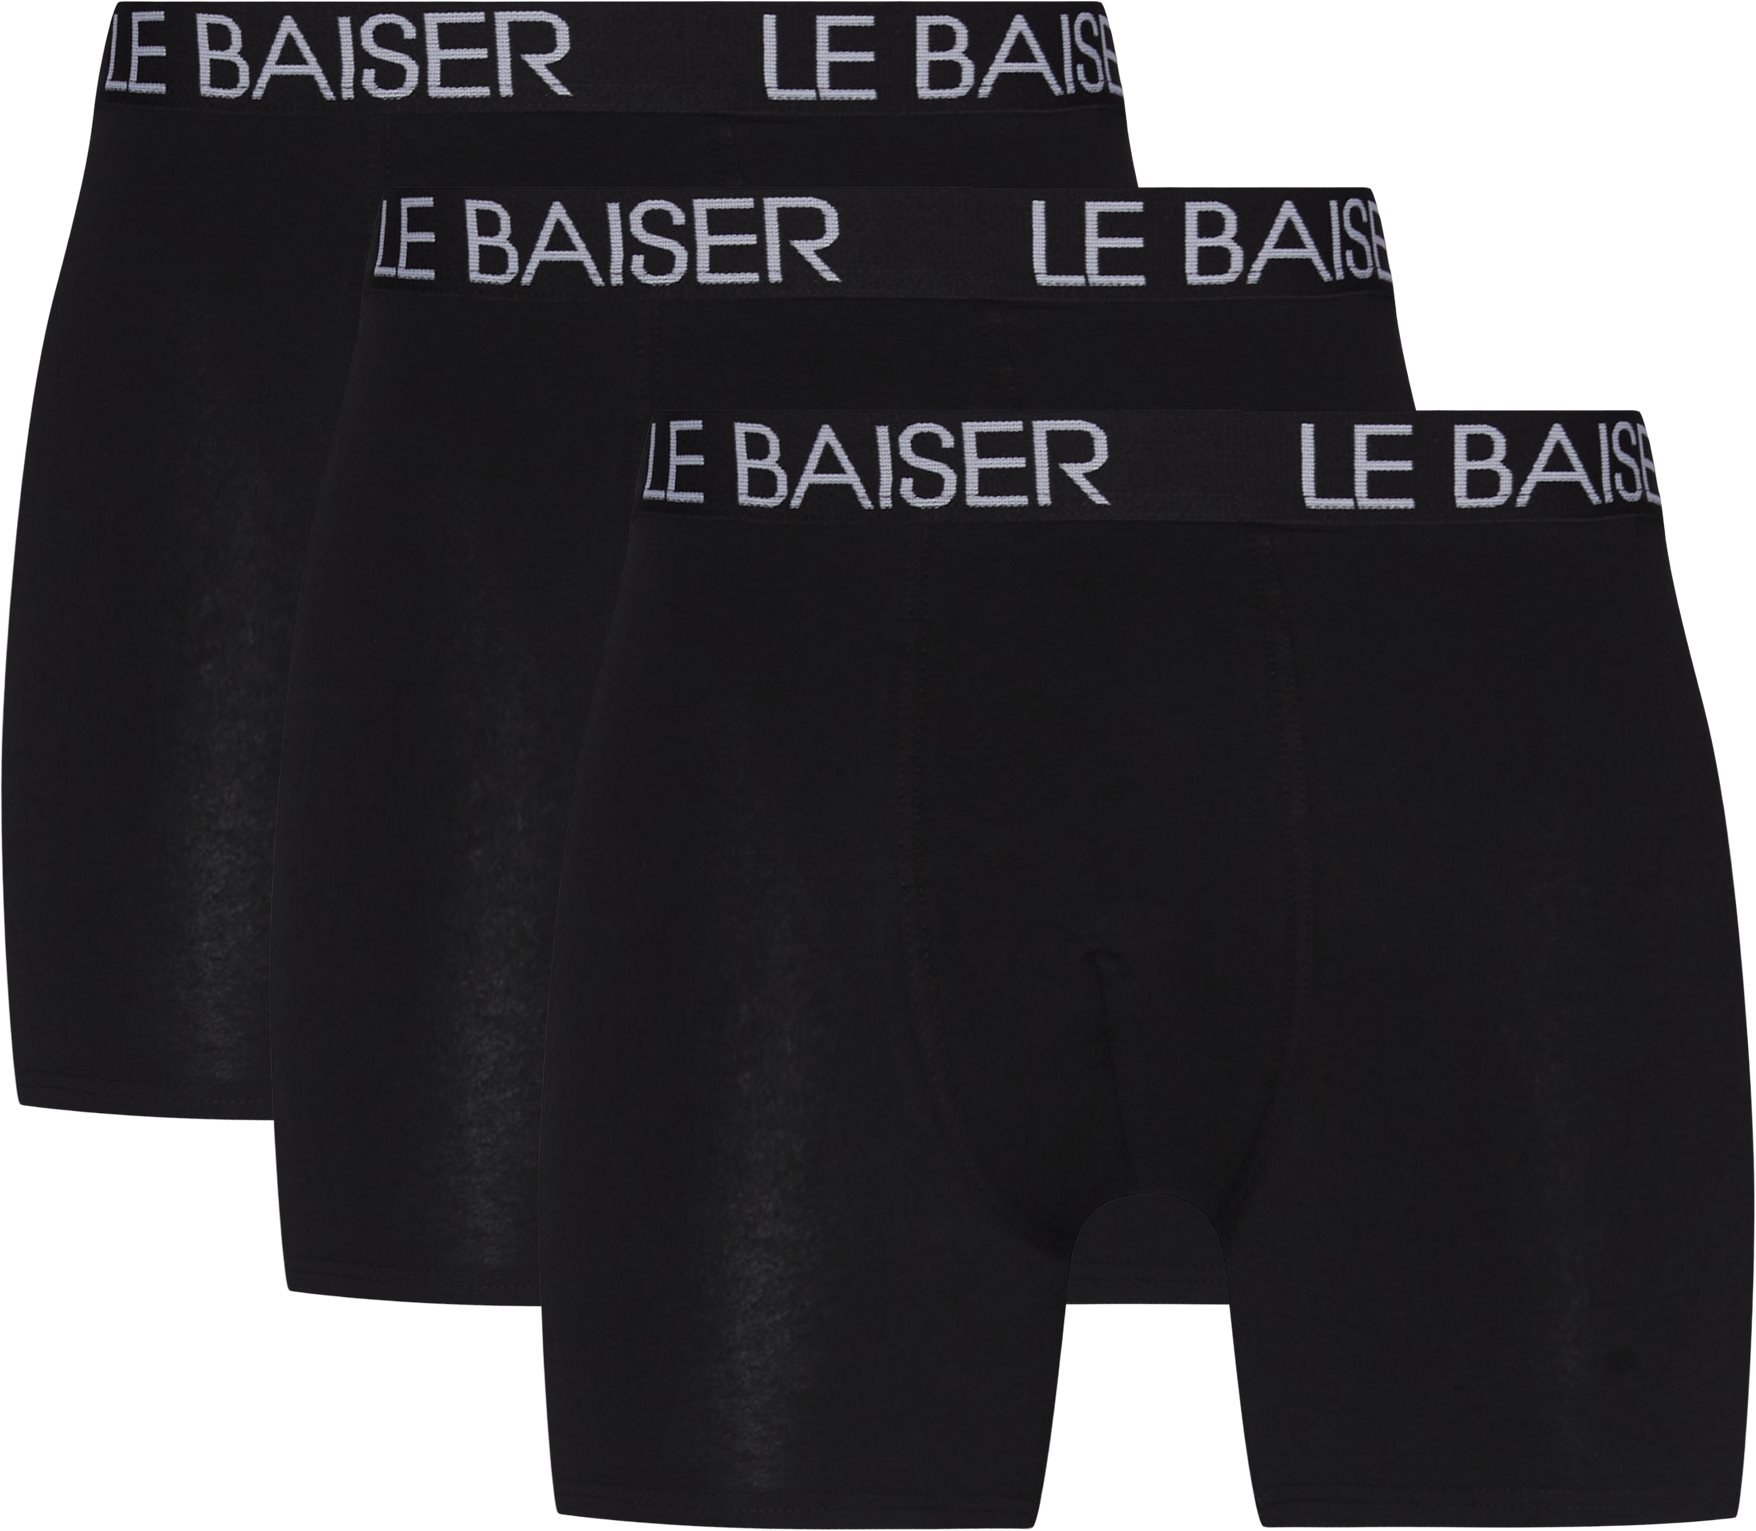 Le Baiser Underkläder TIGHTS 3 PACK 88020-1100 Svart